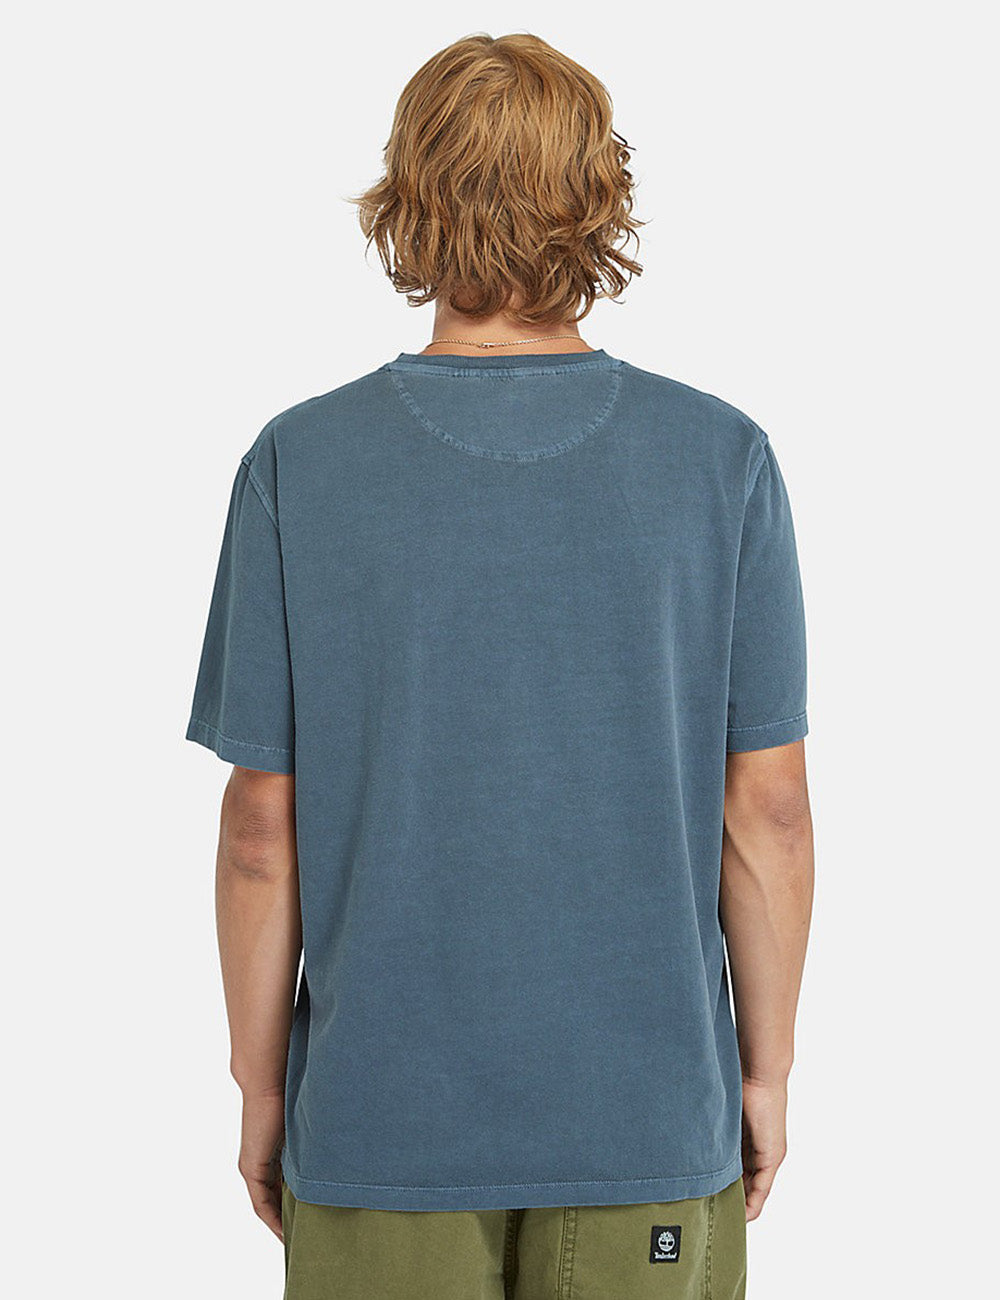 Timberland Dunstan River Garment Dyed T-Shirt - Dark Sapphire